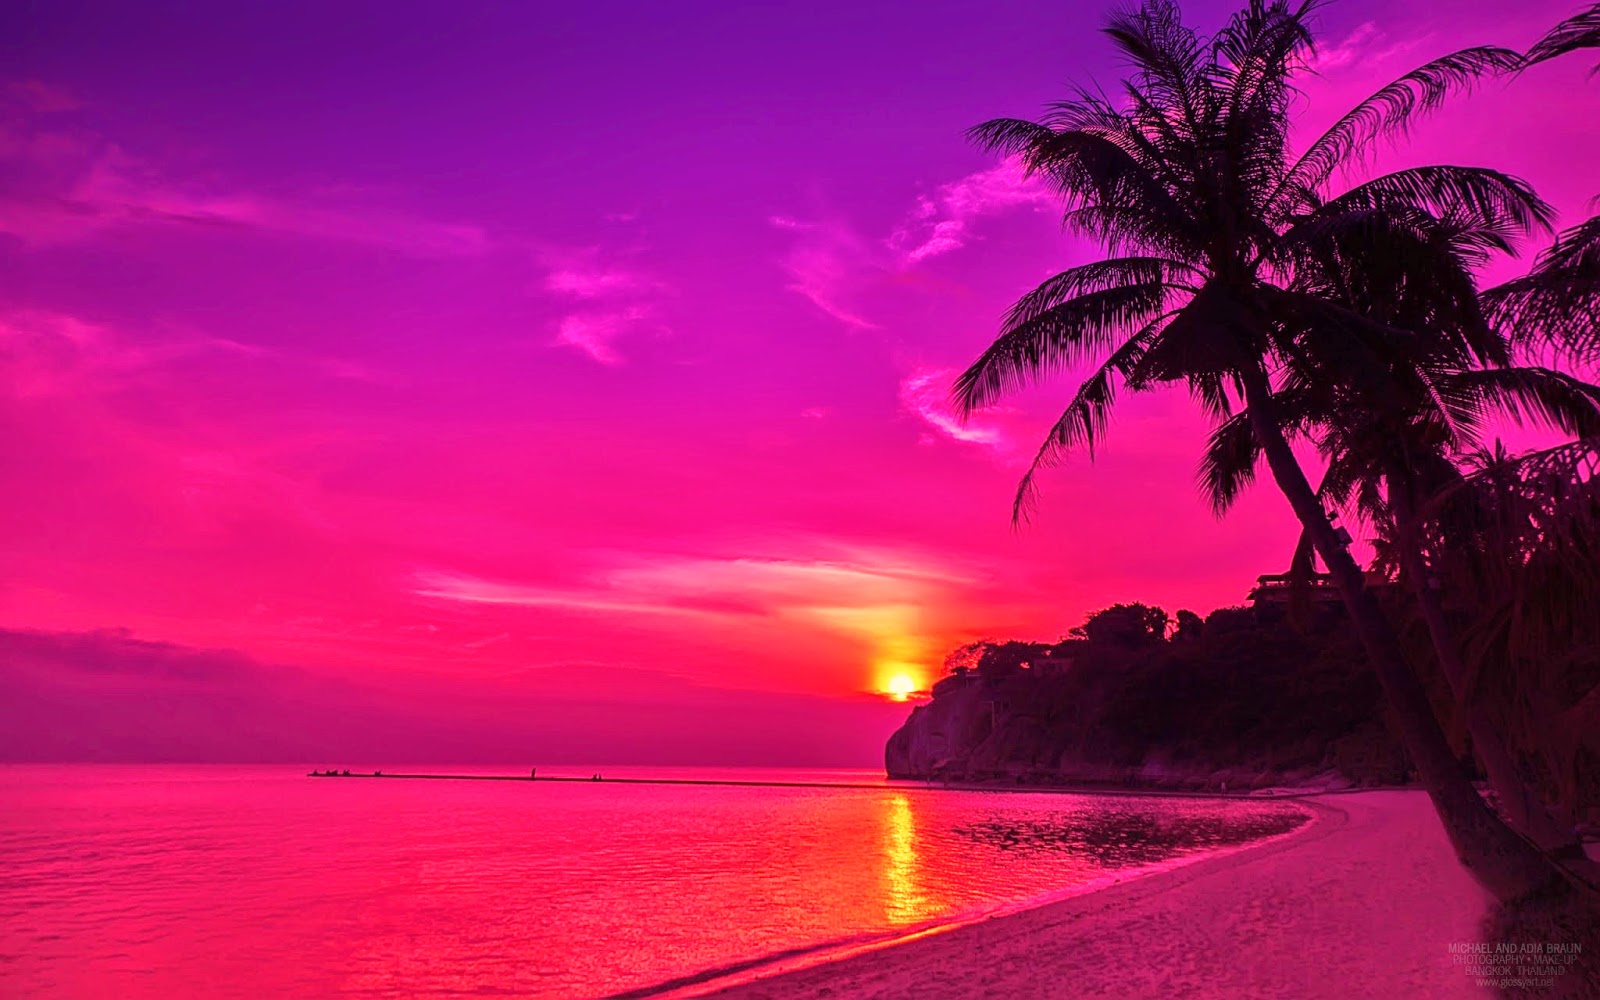 Beach Sunset Wallpaper Jpg Hot Pink